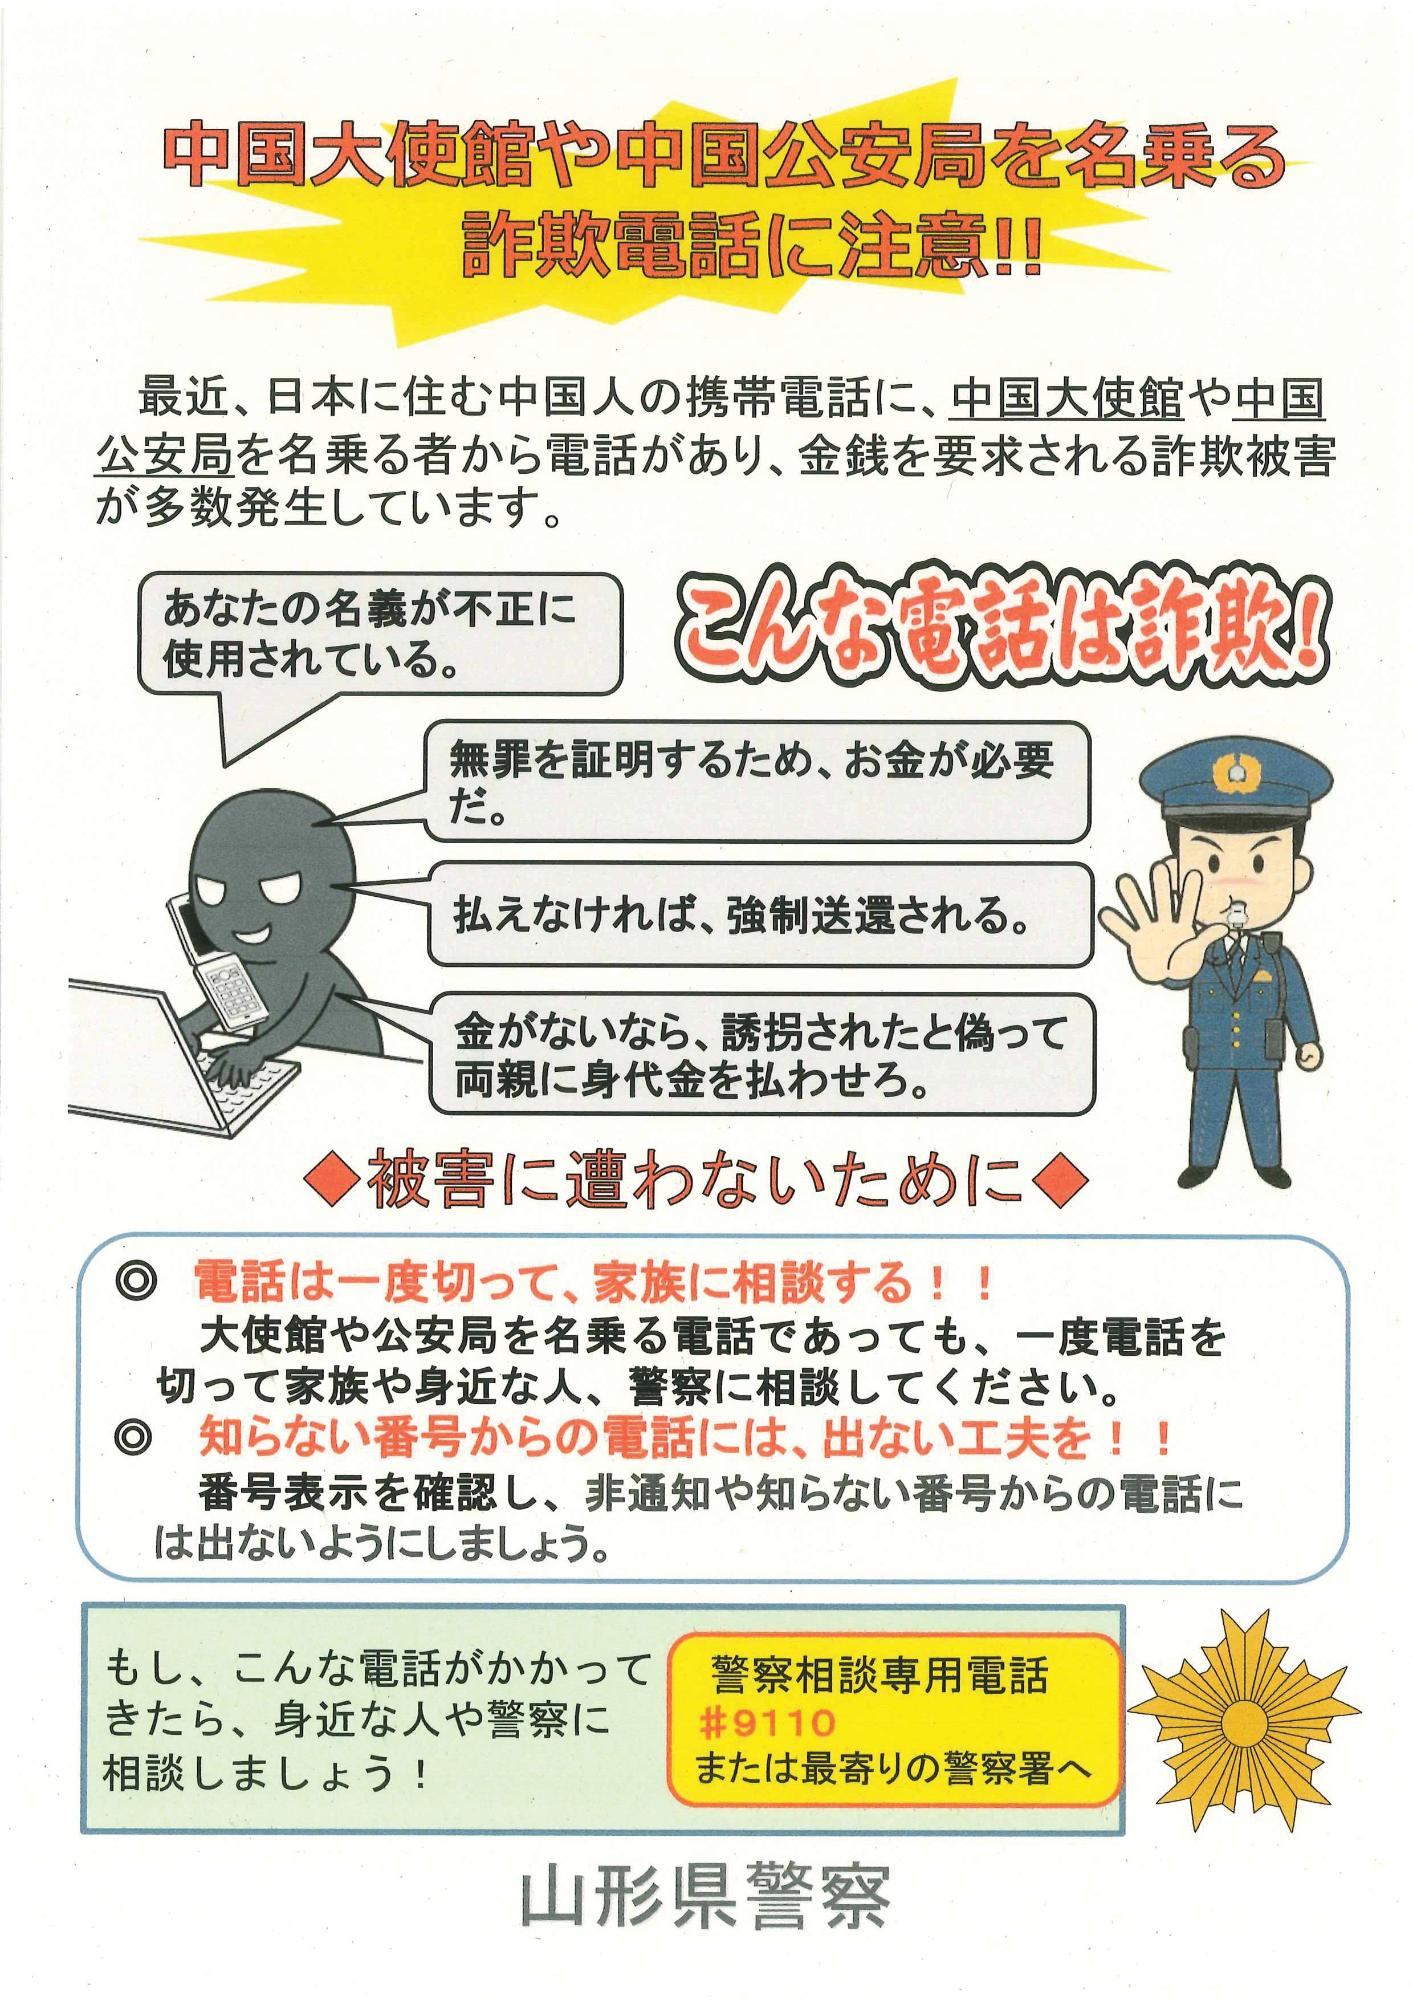 中国大使館や中国公安局を名乗る詐欺電話に注意と書かれた日本語のポスター